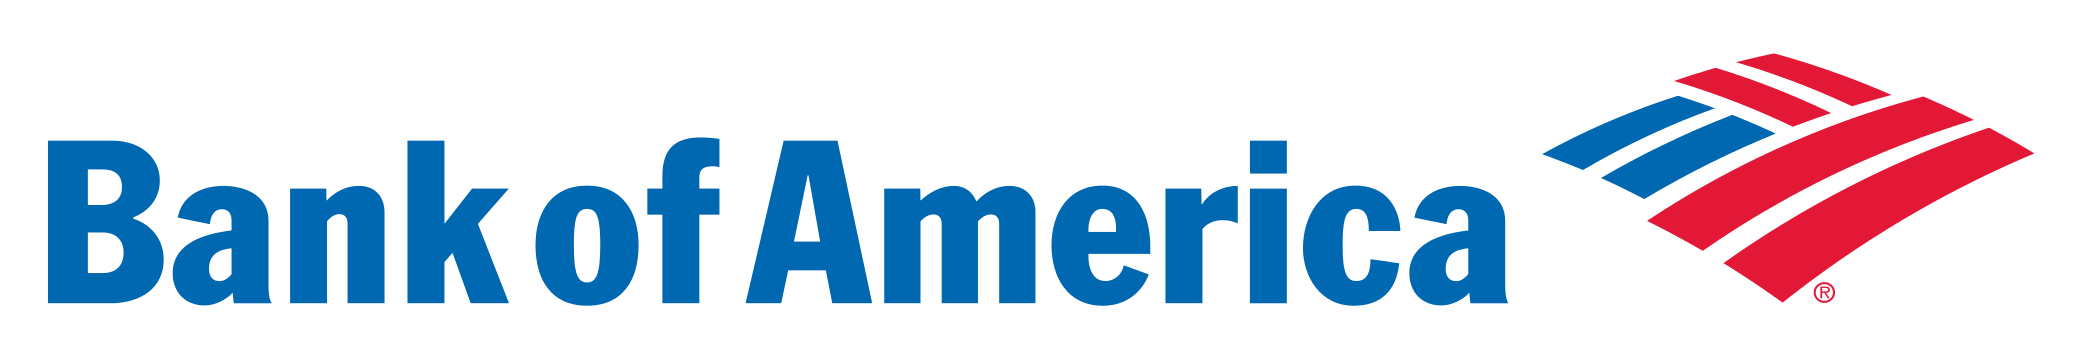 Of America Bank Logo Free HD Image PNG Image